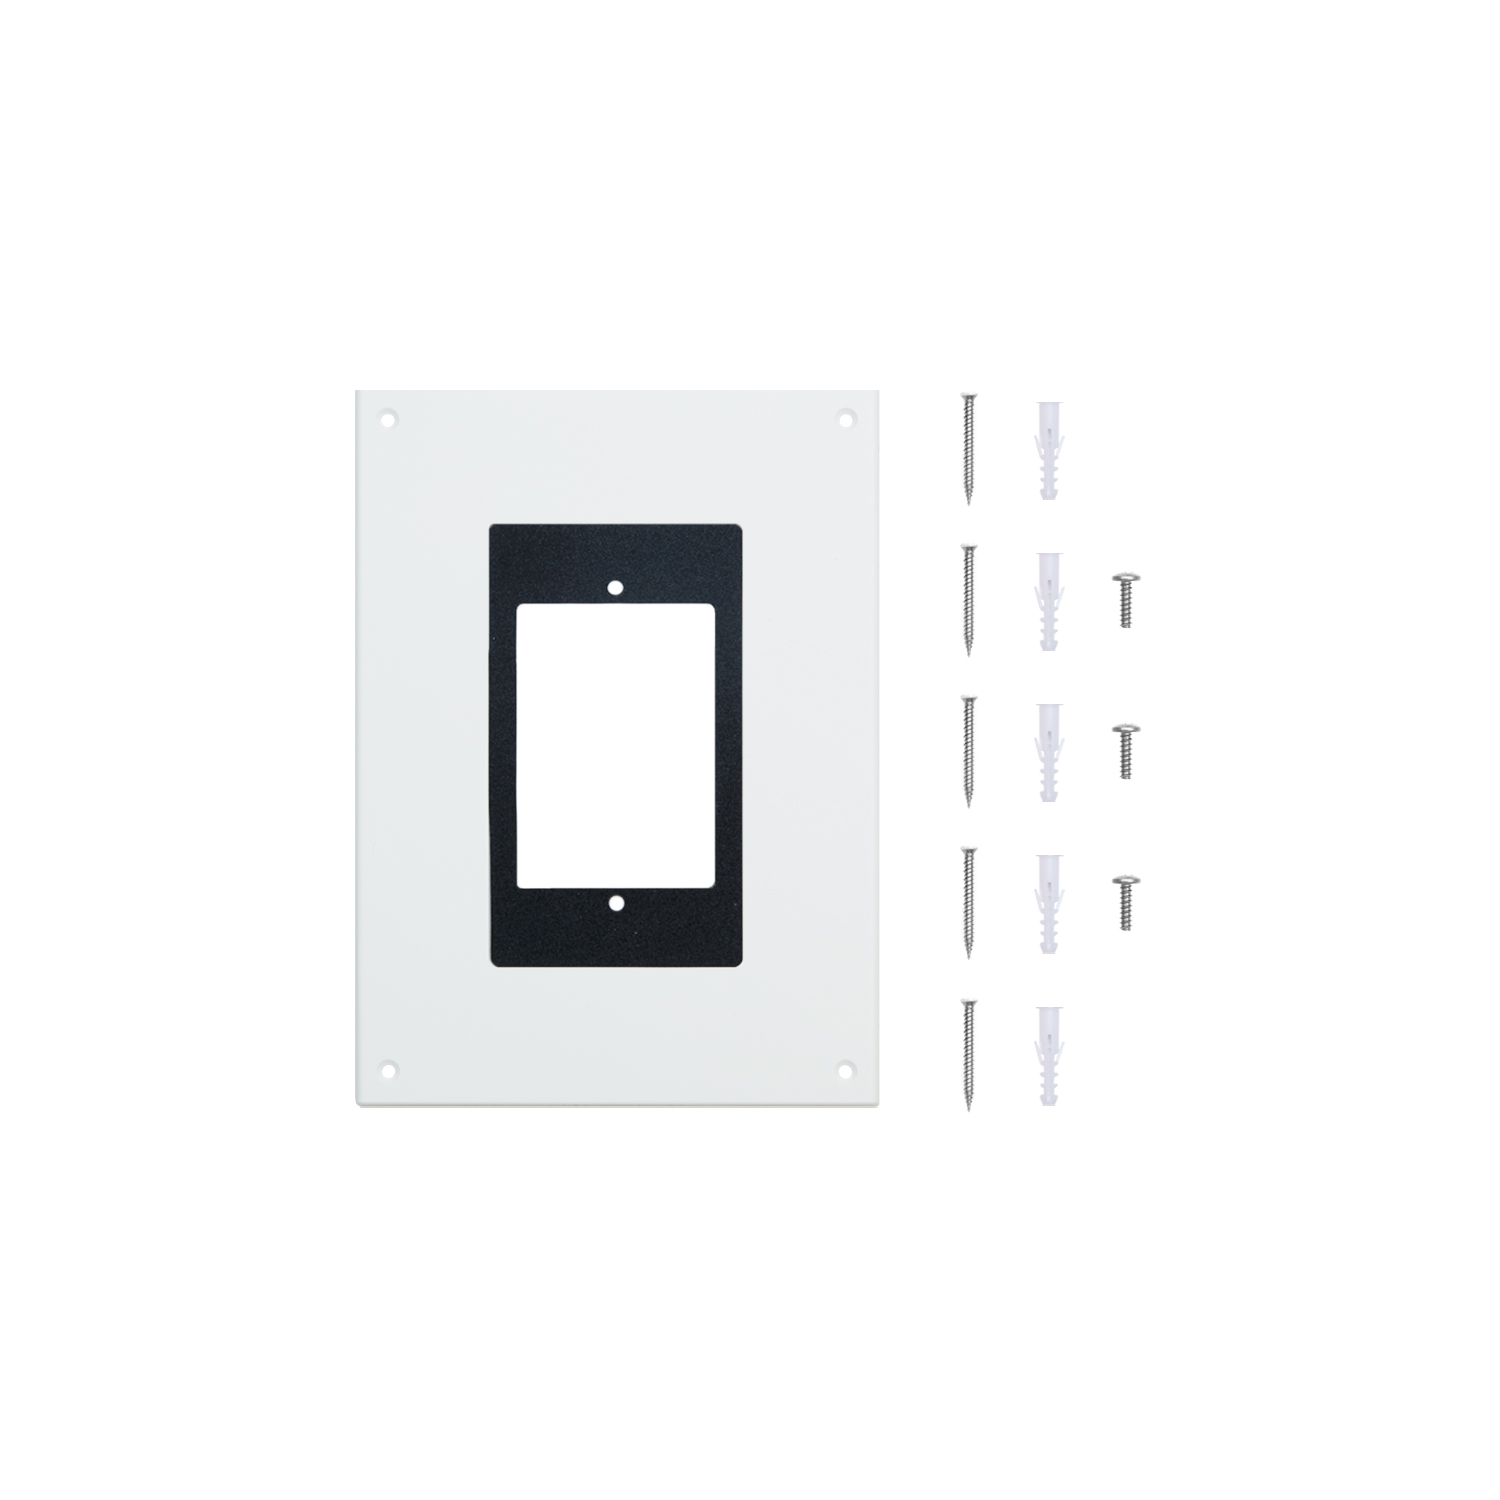 Intercom Kit (for Video Doorbell Elite) - White